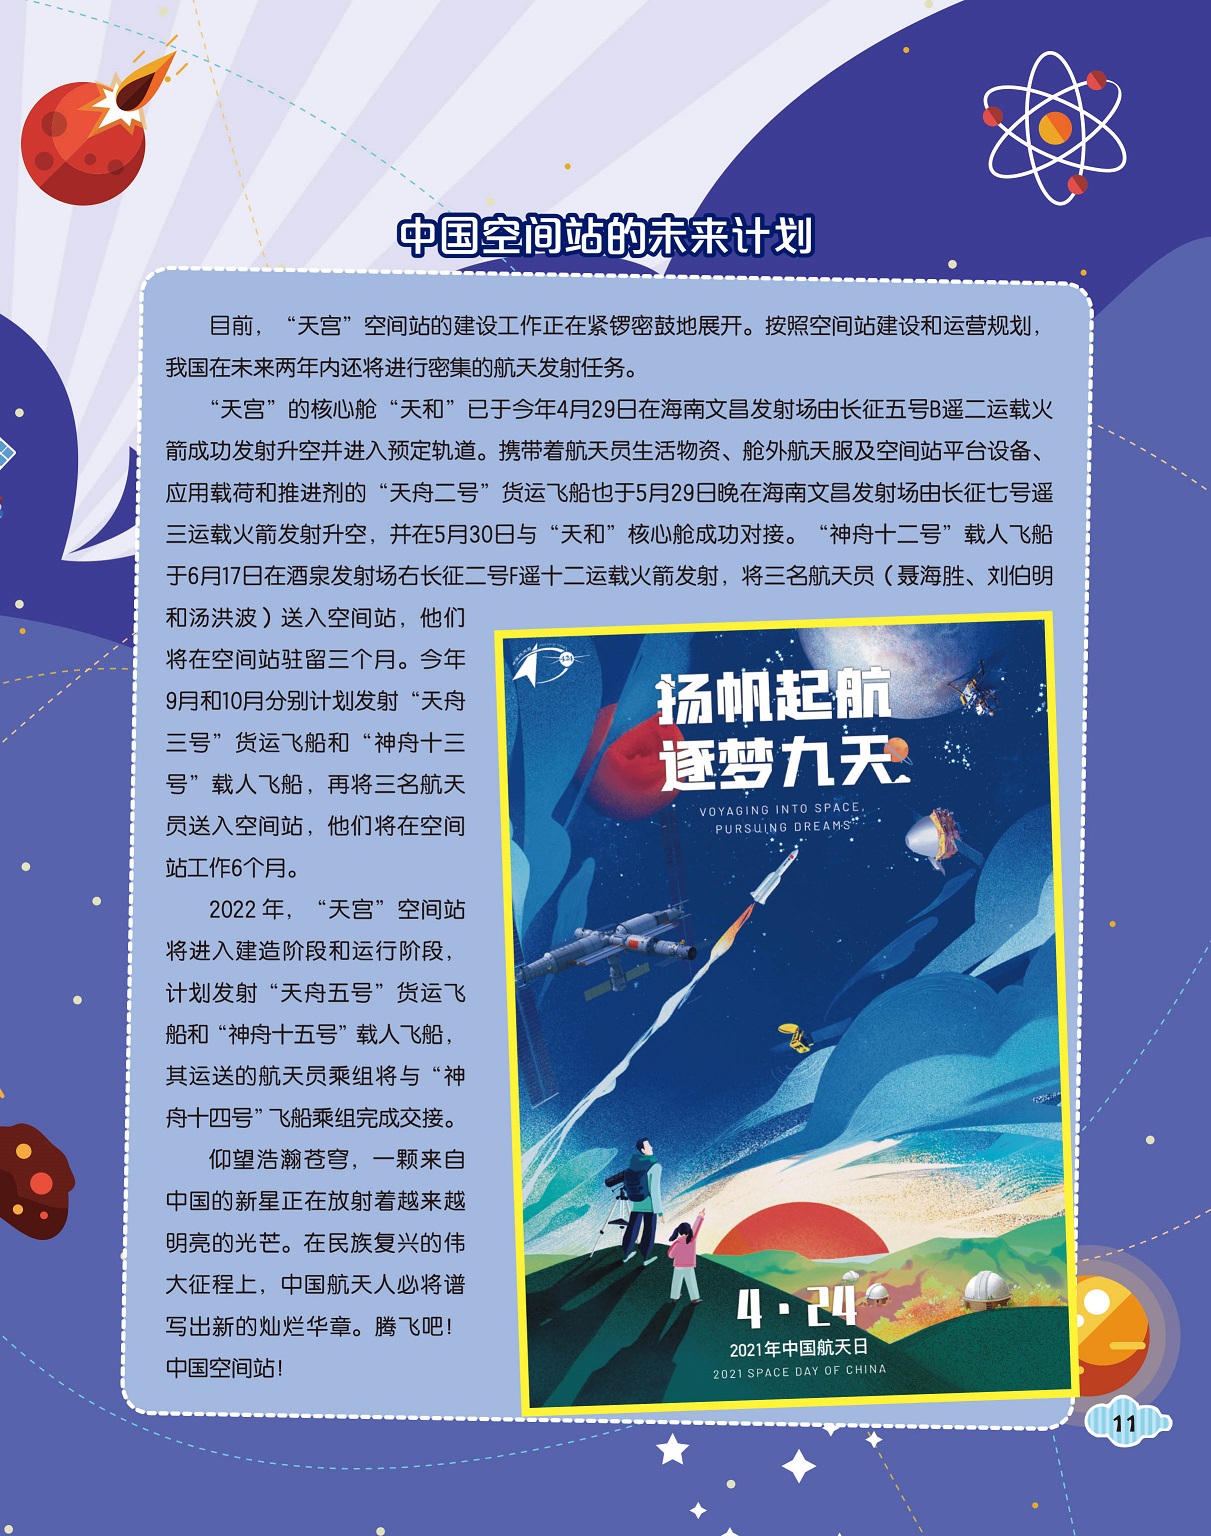 中国空间站的未来计划,中国航天的未来征程